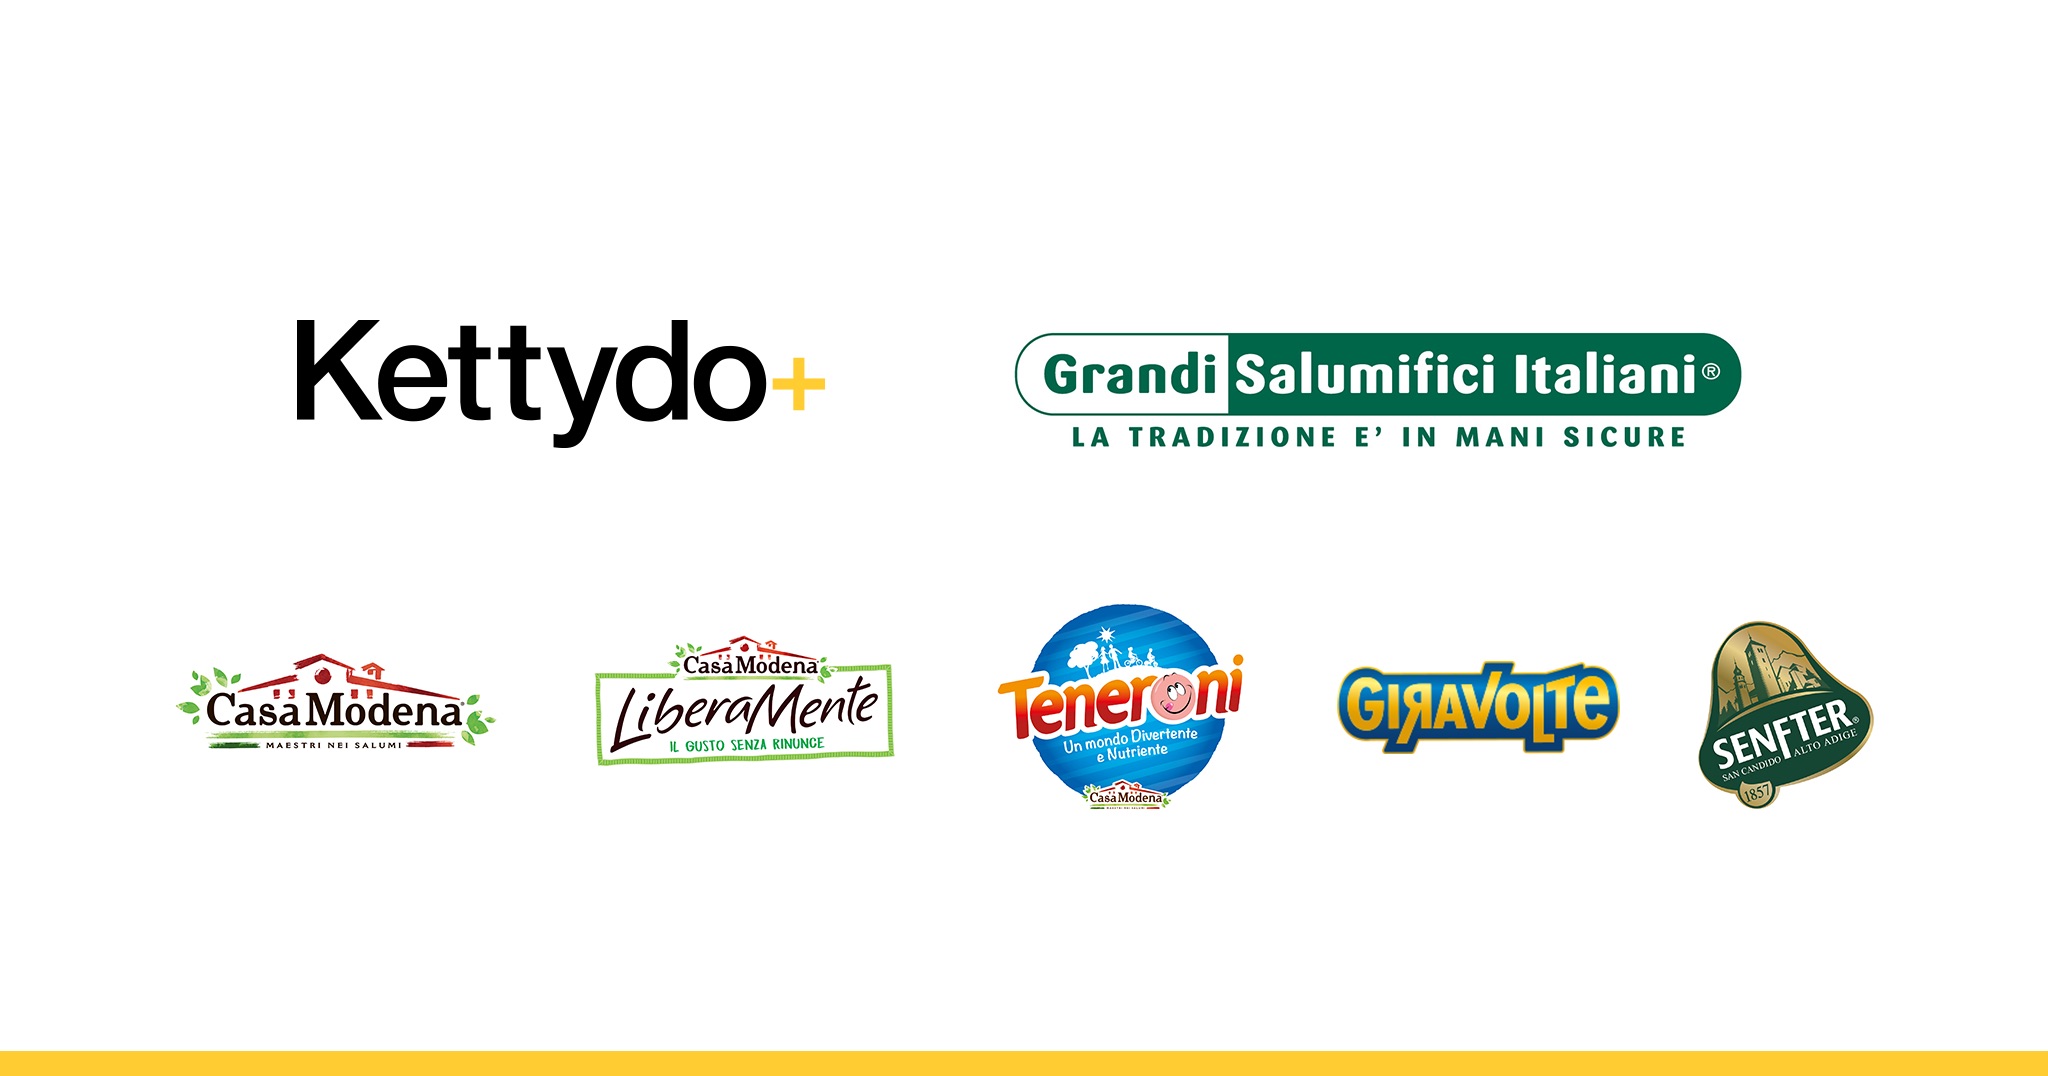 Grandi Salumifici Italiani affida a Kettydo+ la ridefinizione della strategia digitale di tutti i propri brand